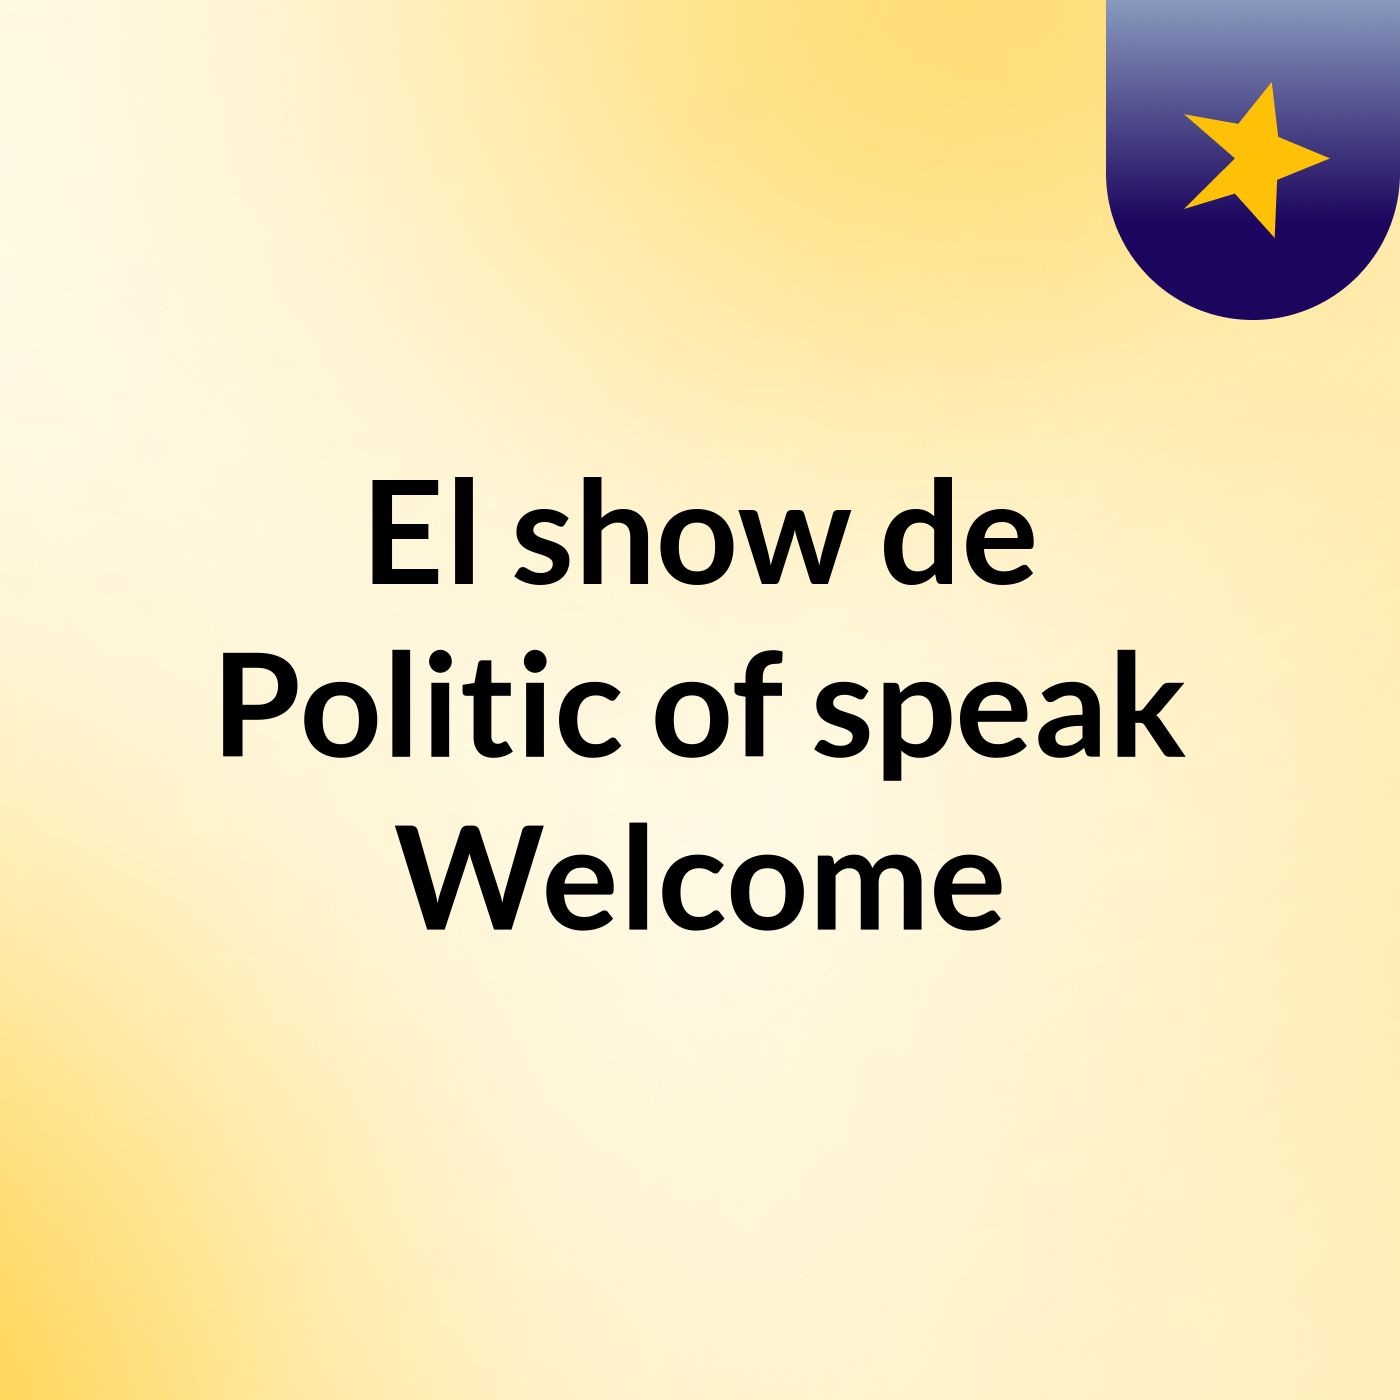 El show de Politic of speak, Welcome